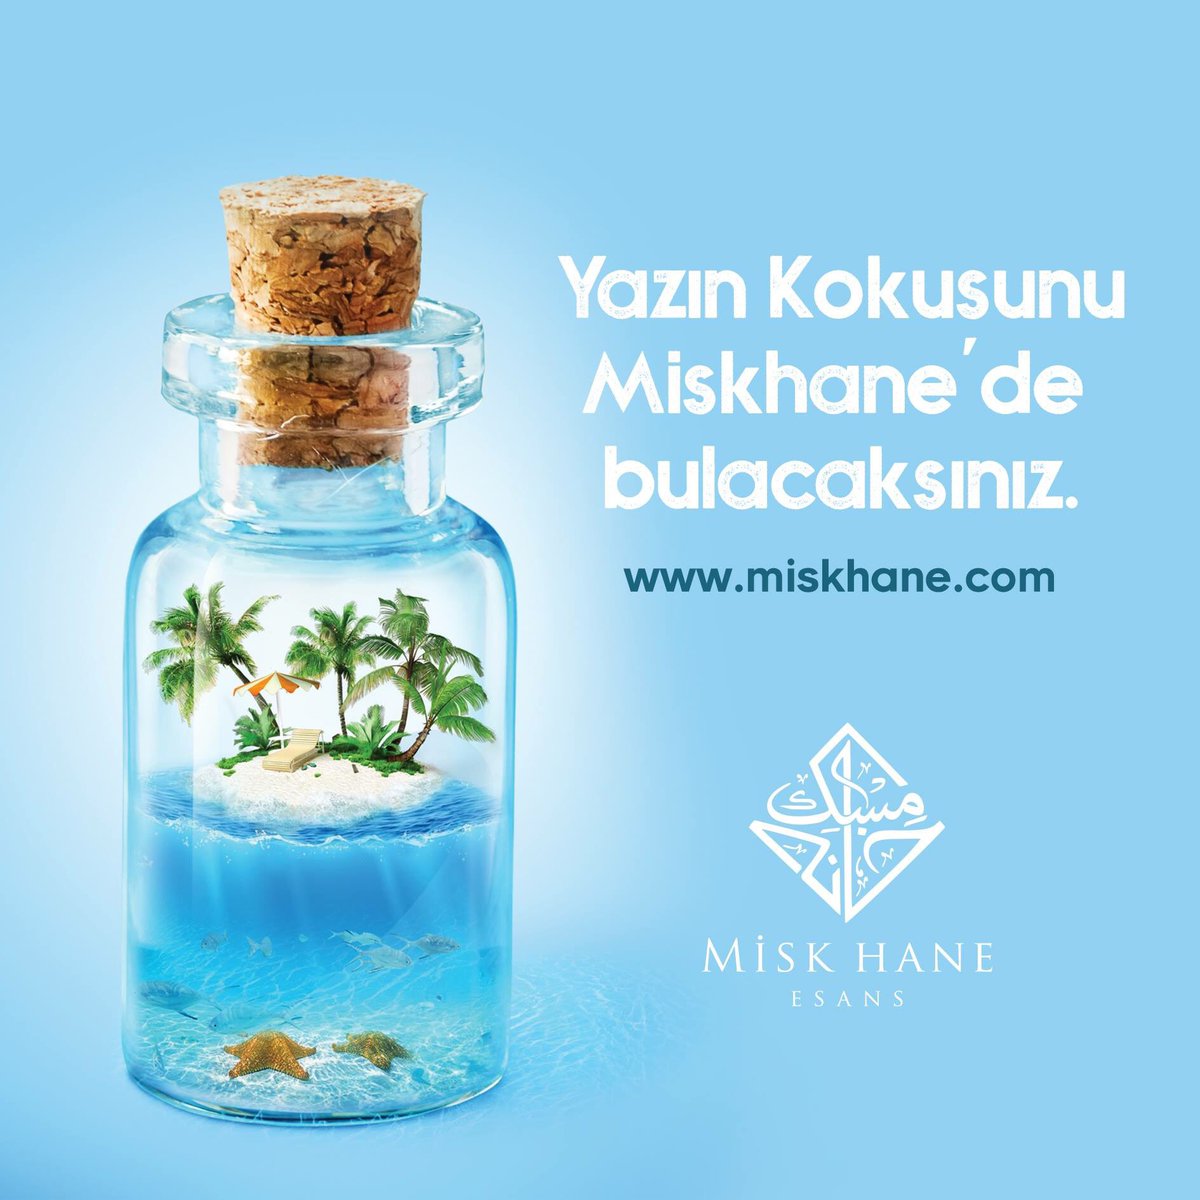 Yazın Kokusunu Miskhane’de 
bulacaksınız.
miskhane.com
#yaz #summer #yazkokusu #koku #parfum